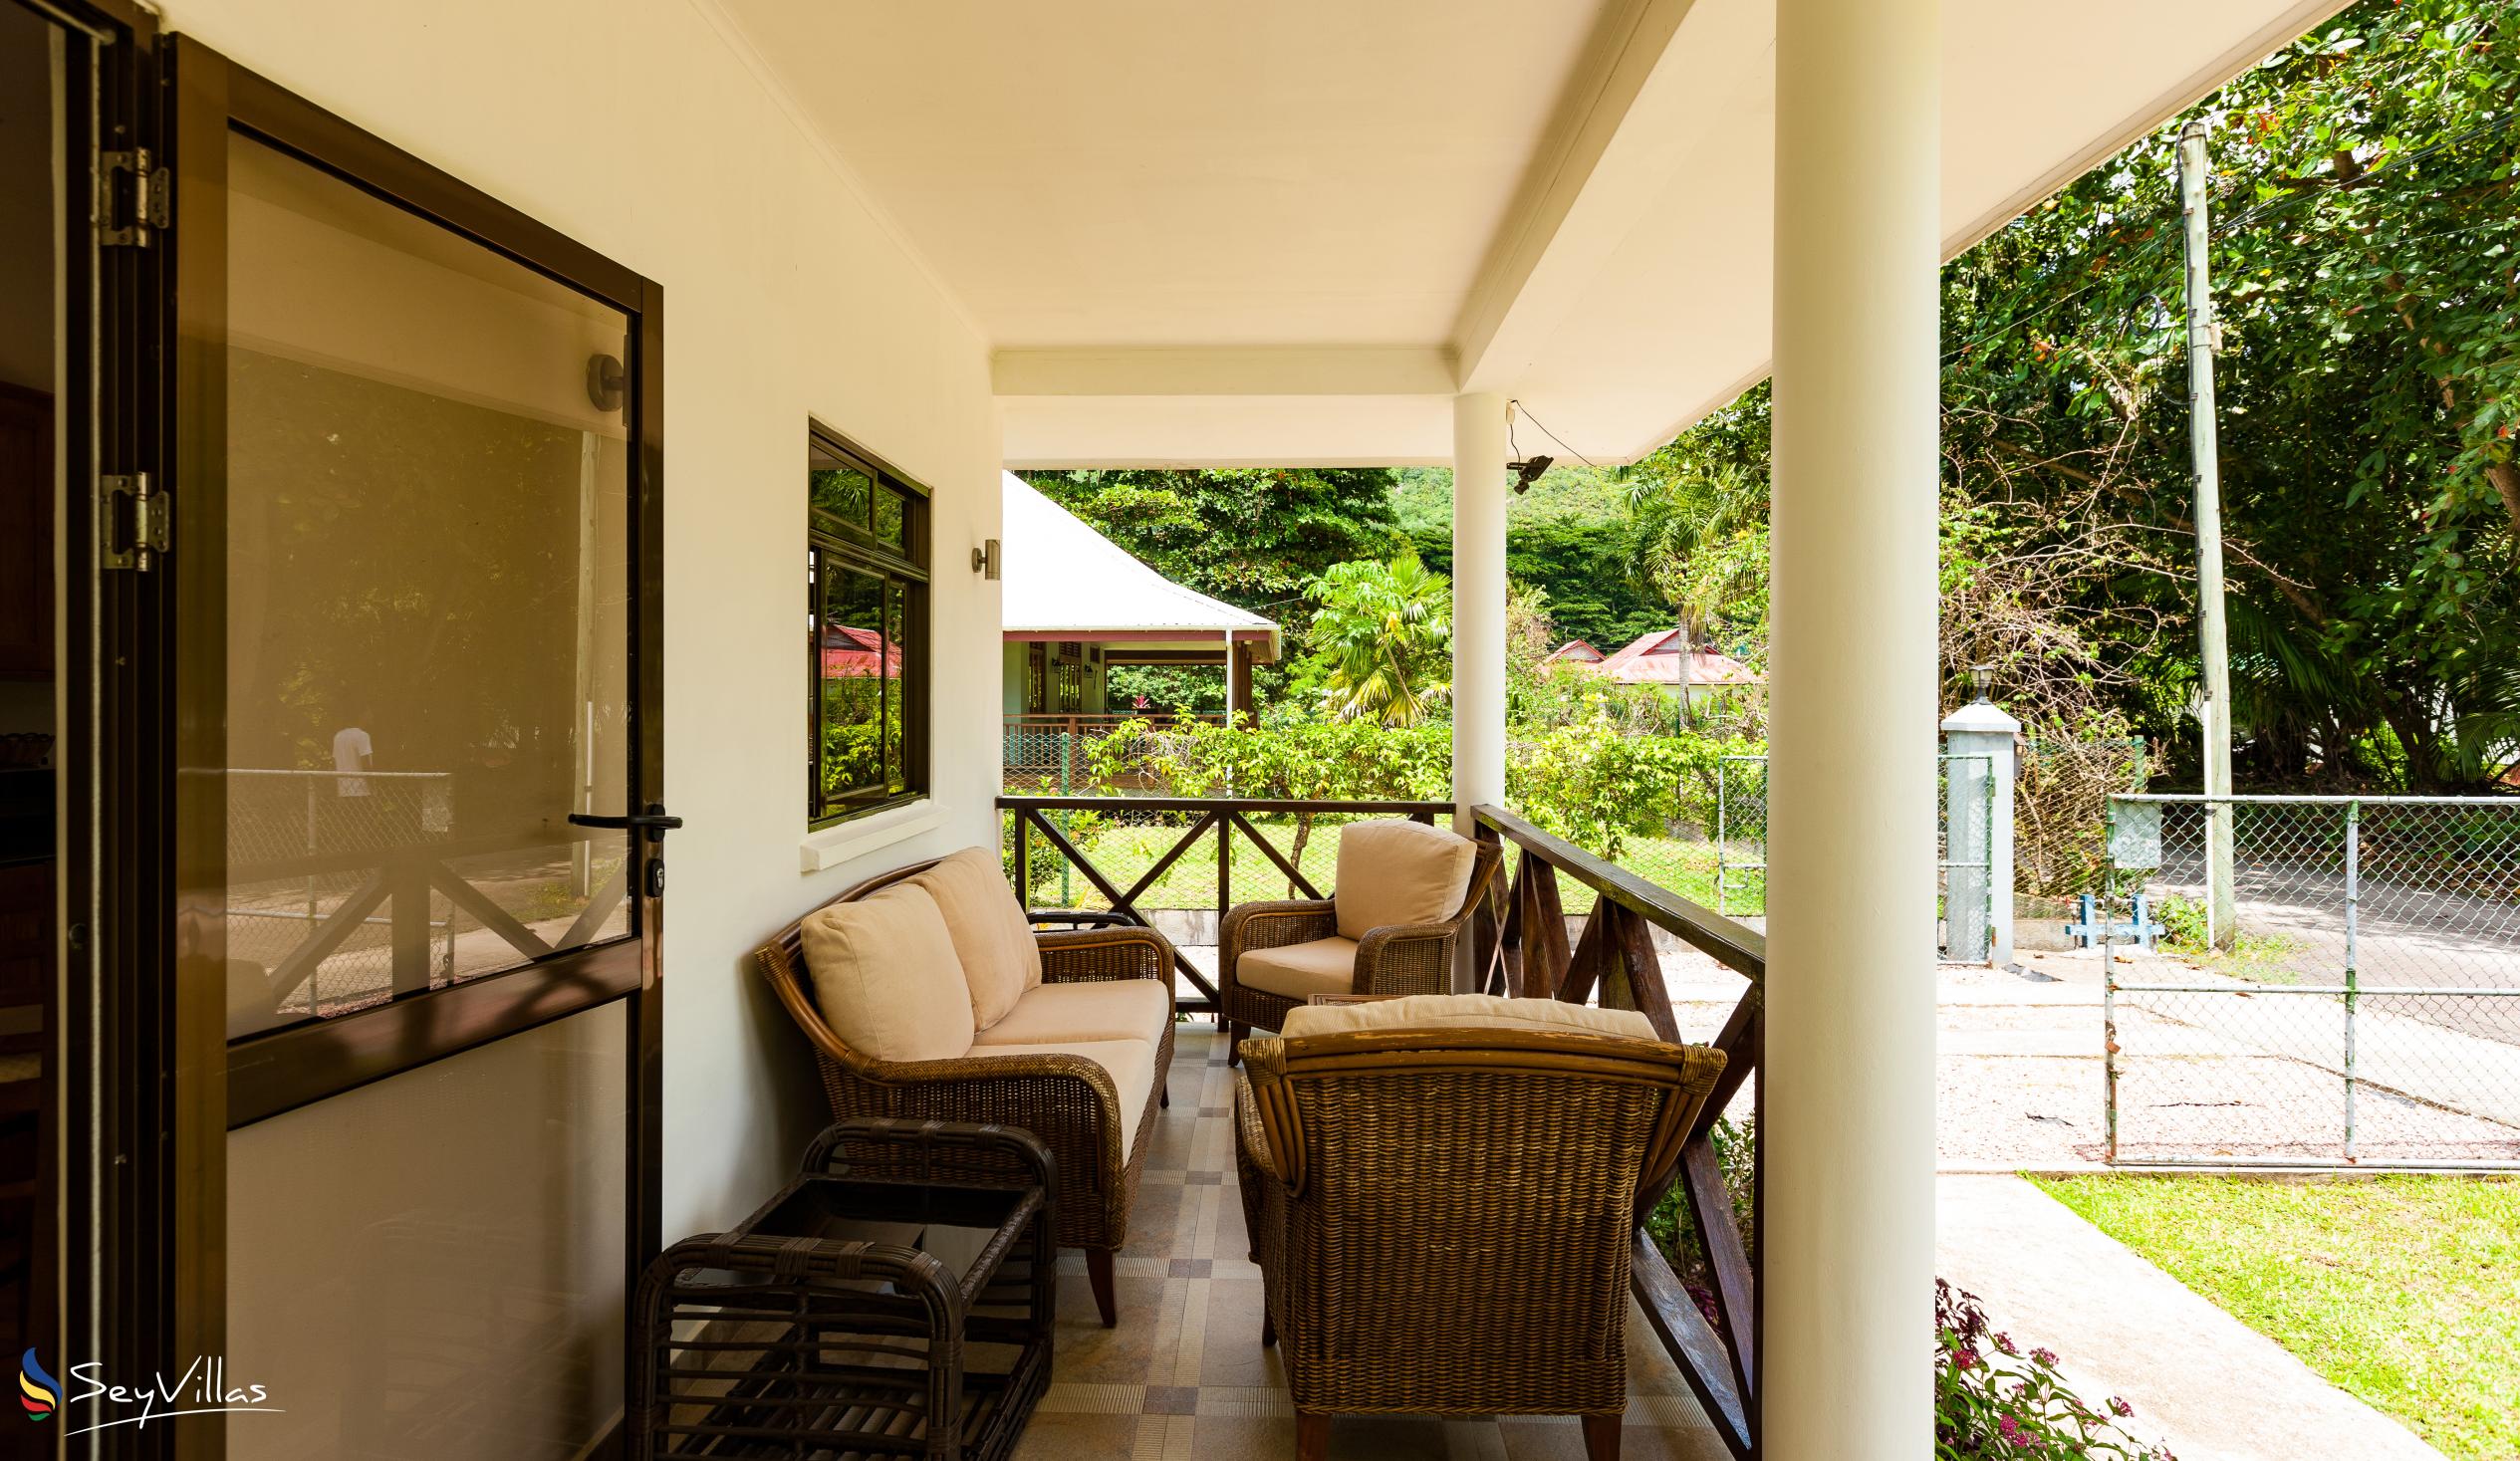 Foto 4: Villa Laure - Esterno - Praslin (Seychelles)